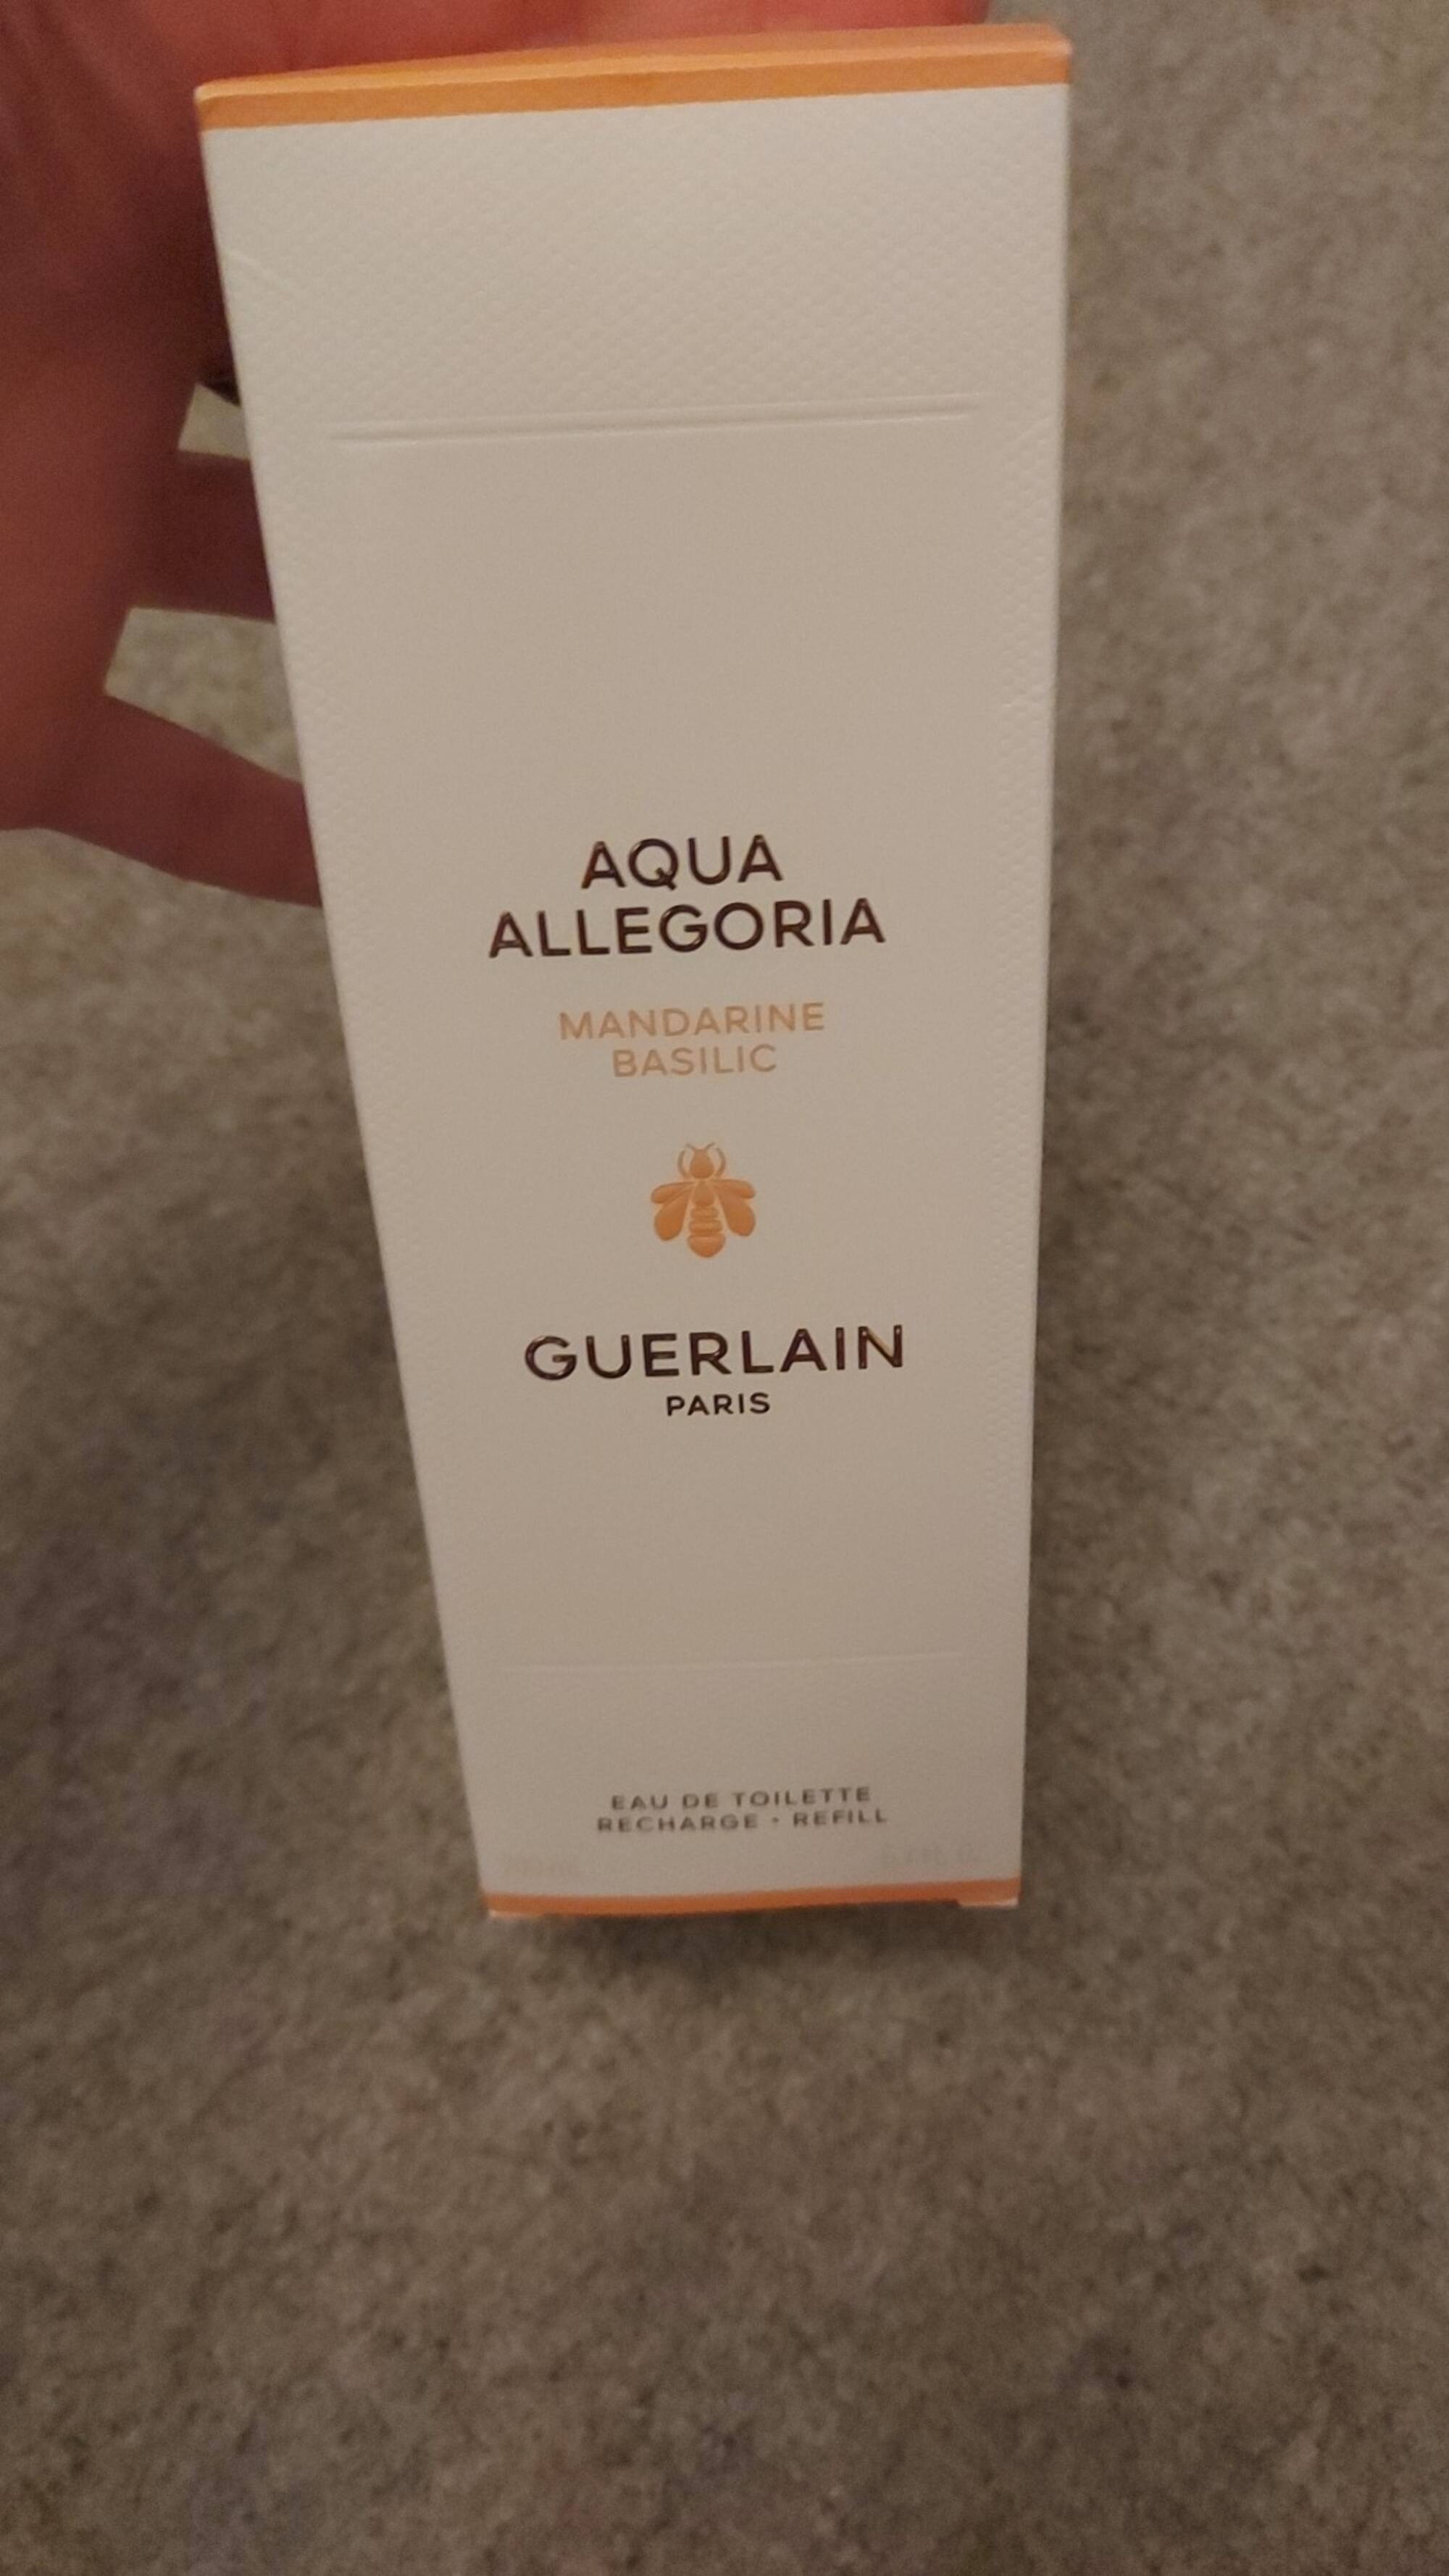 GUERLAIN - Aqua allegoria - Eau de toilette mandarine basilic